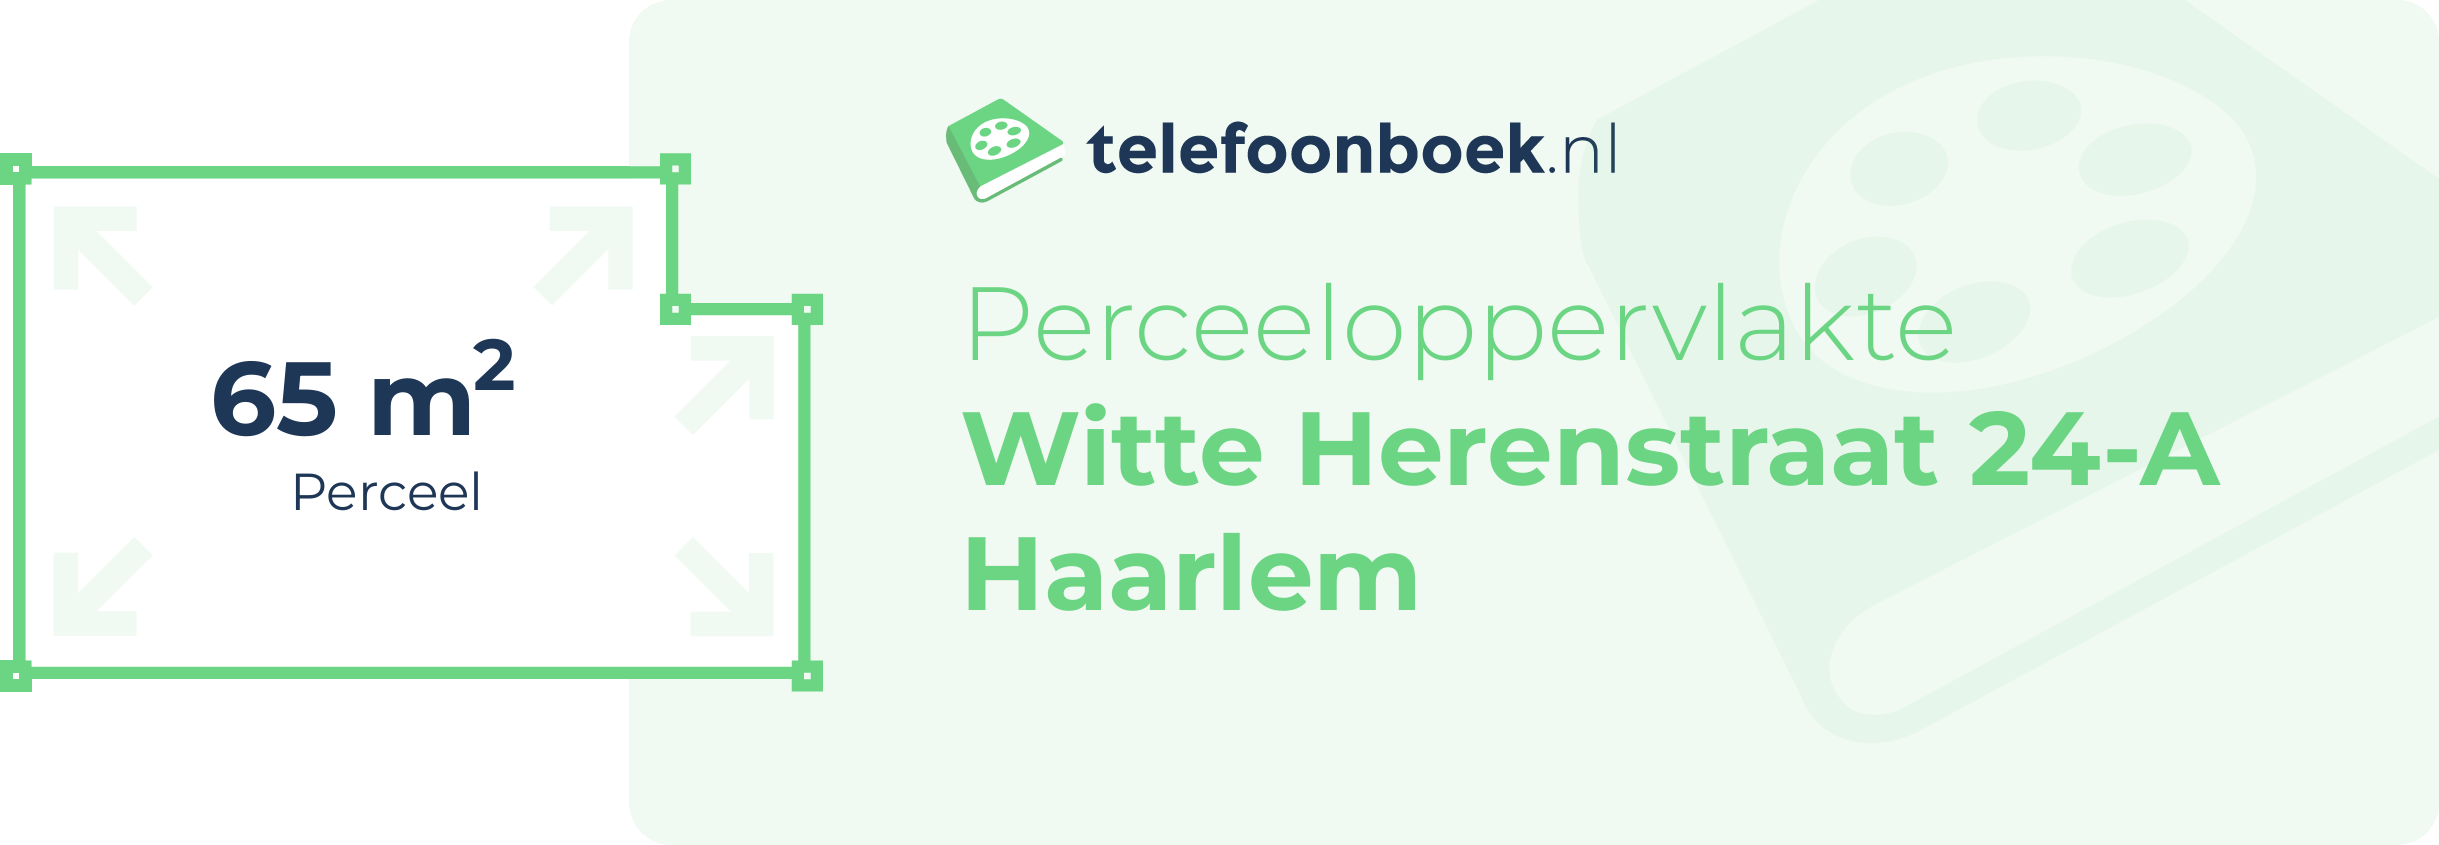 Perceeloppervlakte Witte Herenstraat 24-A Haarlem